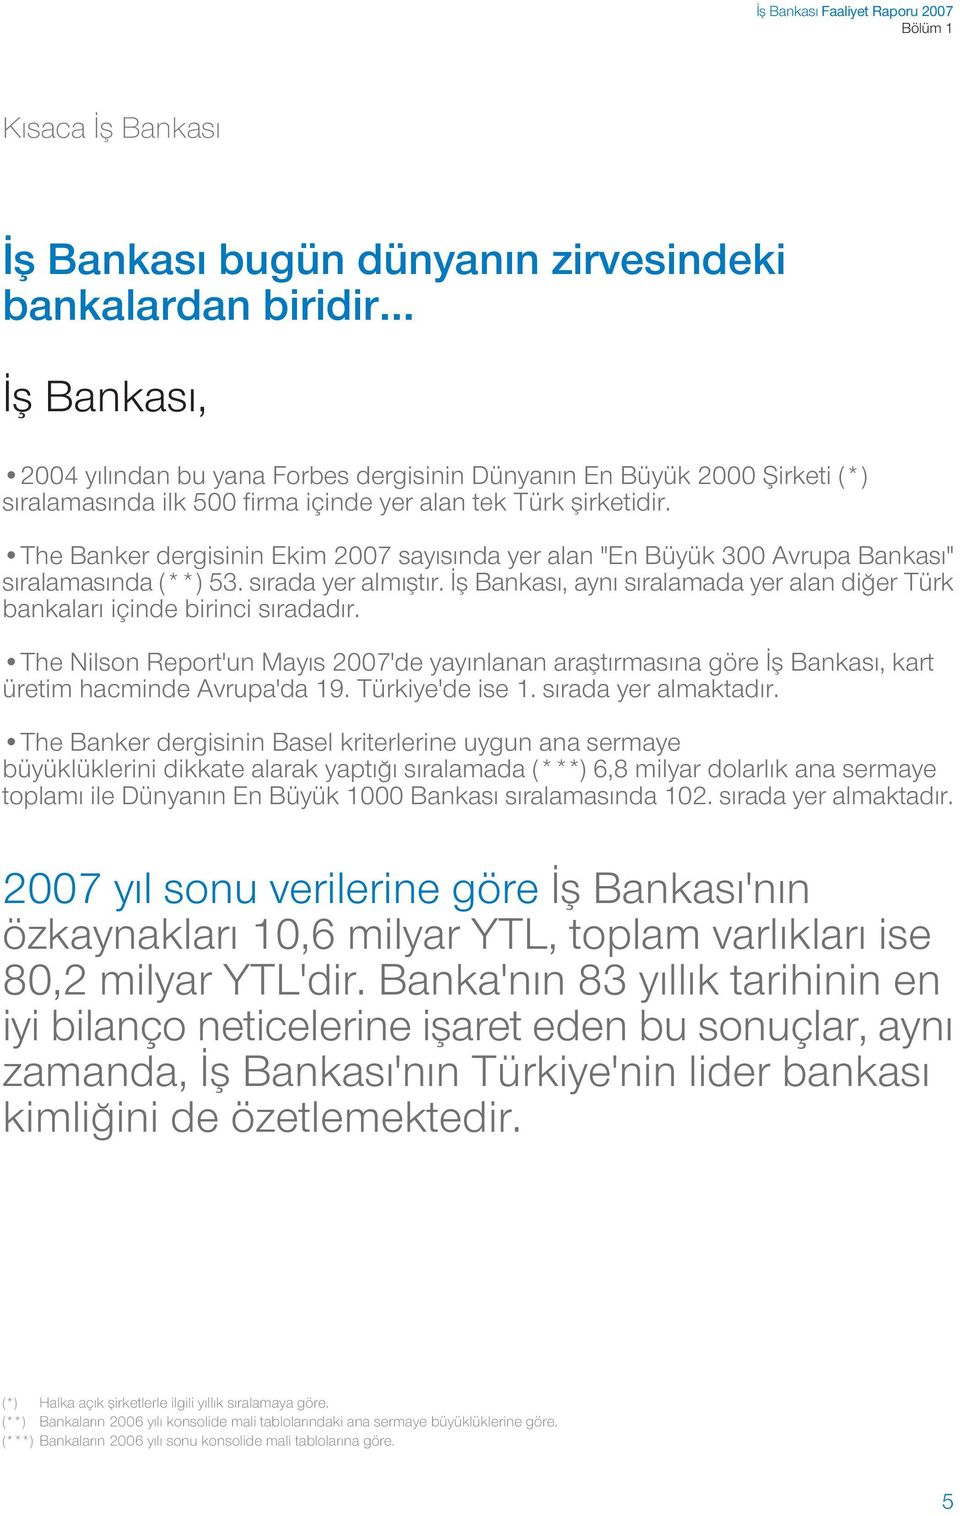 The Banker dergisinin Ekim 2007 say s nda yer alan "En Büyük 300 Avrupa Bankas " s ralamas nda (**) 53. s rada yer alm flt r.